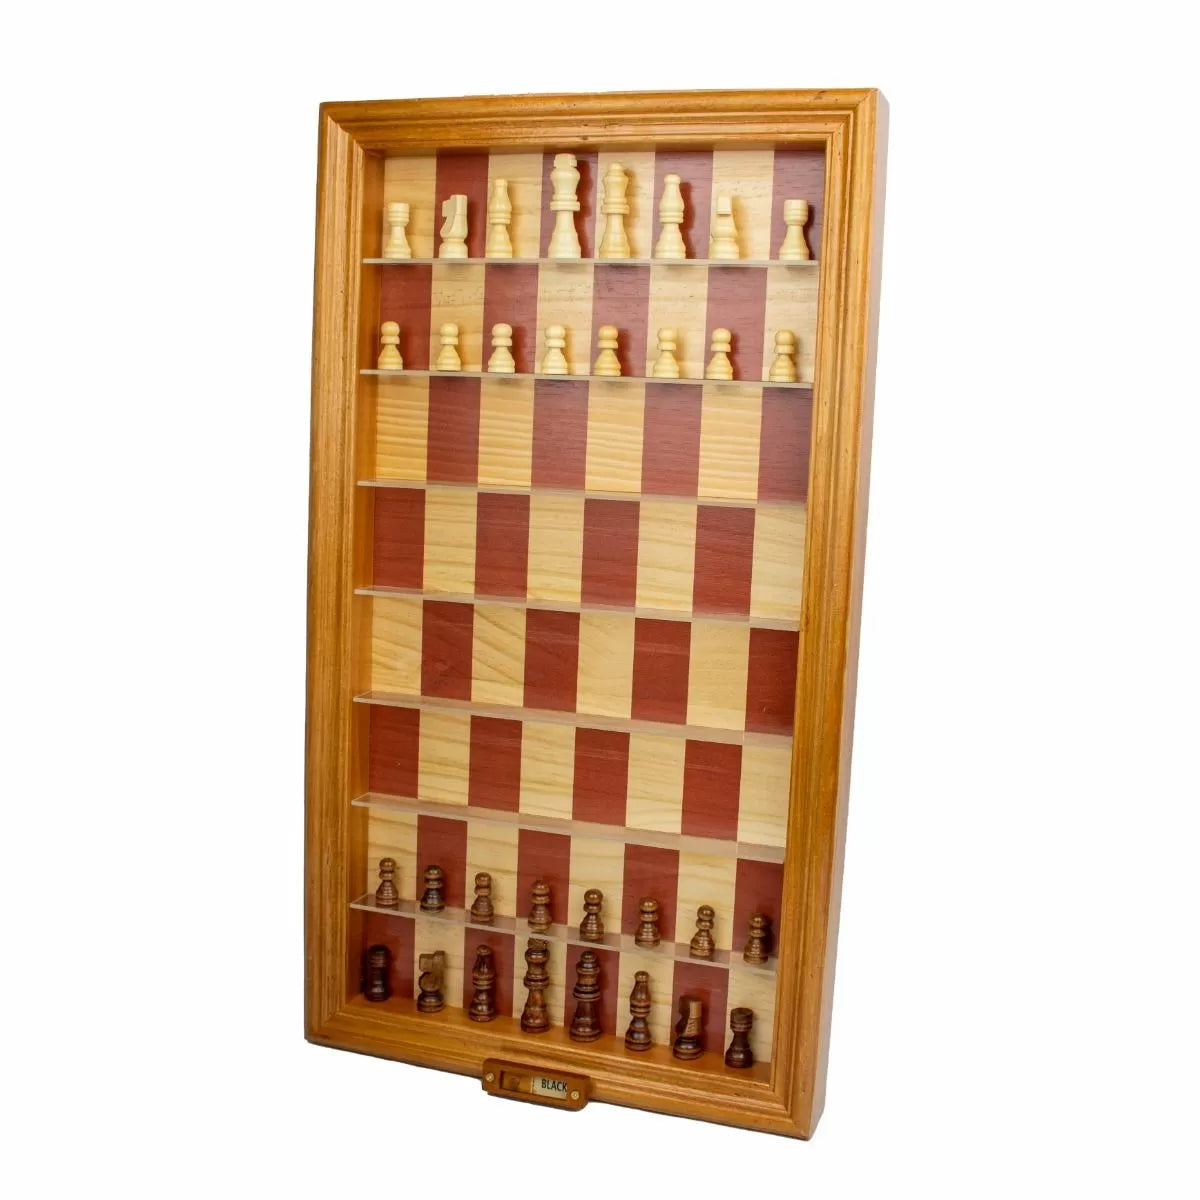 Vertical Chess Set